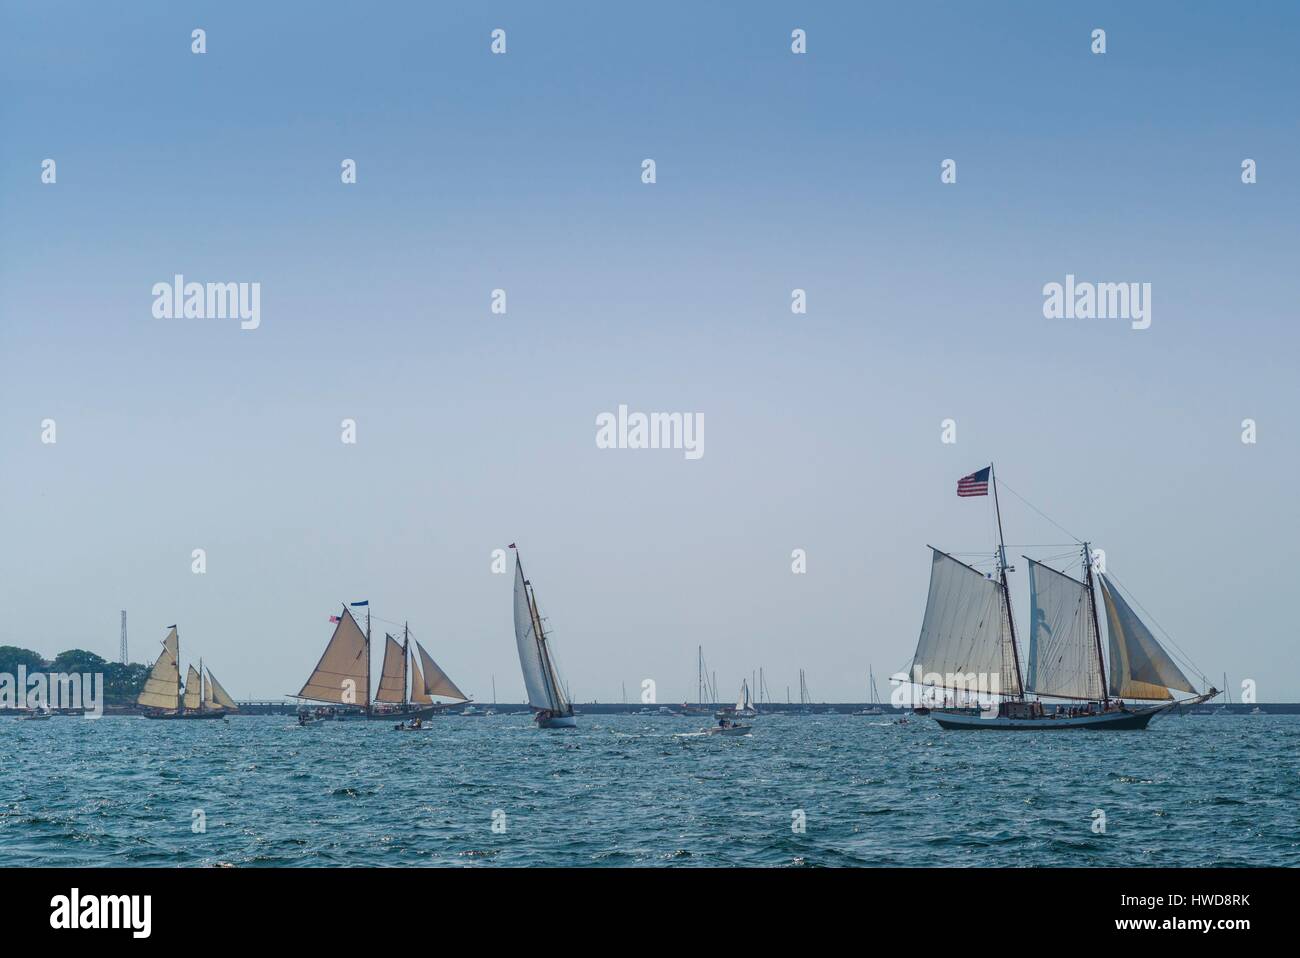 United States, Massachusetts, Cape Ann, Gloucester, America's Oldest Seaport, Annual Schooner Festival Stock Photo